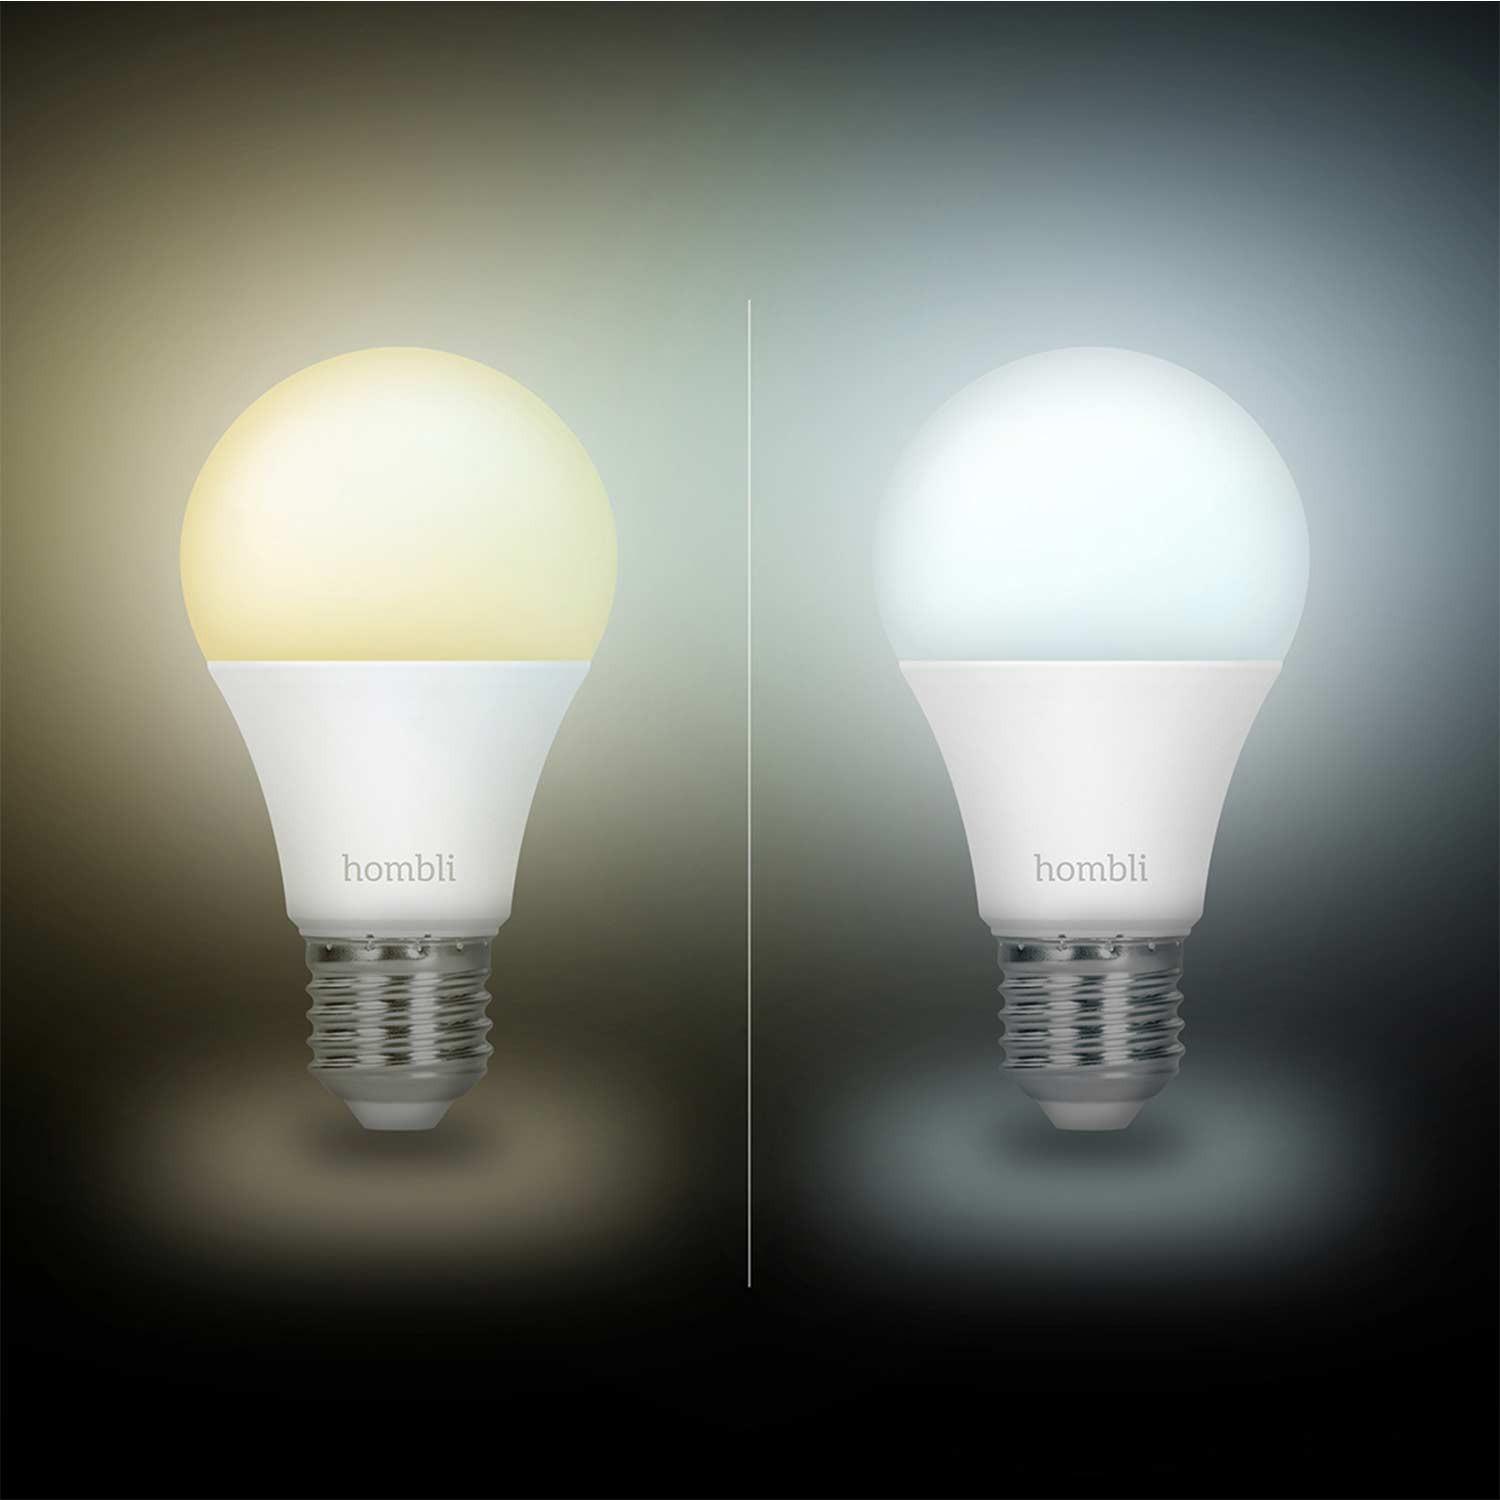 Hombli Smart Bulb E27 White-Lampe 2er-Set + gratis Smart Bulb E27 White 2er-Set - Ambient